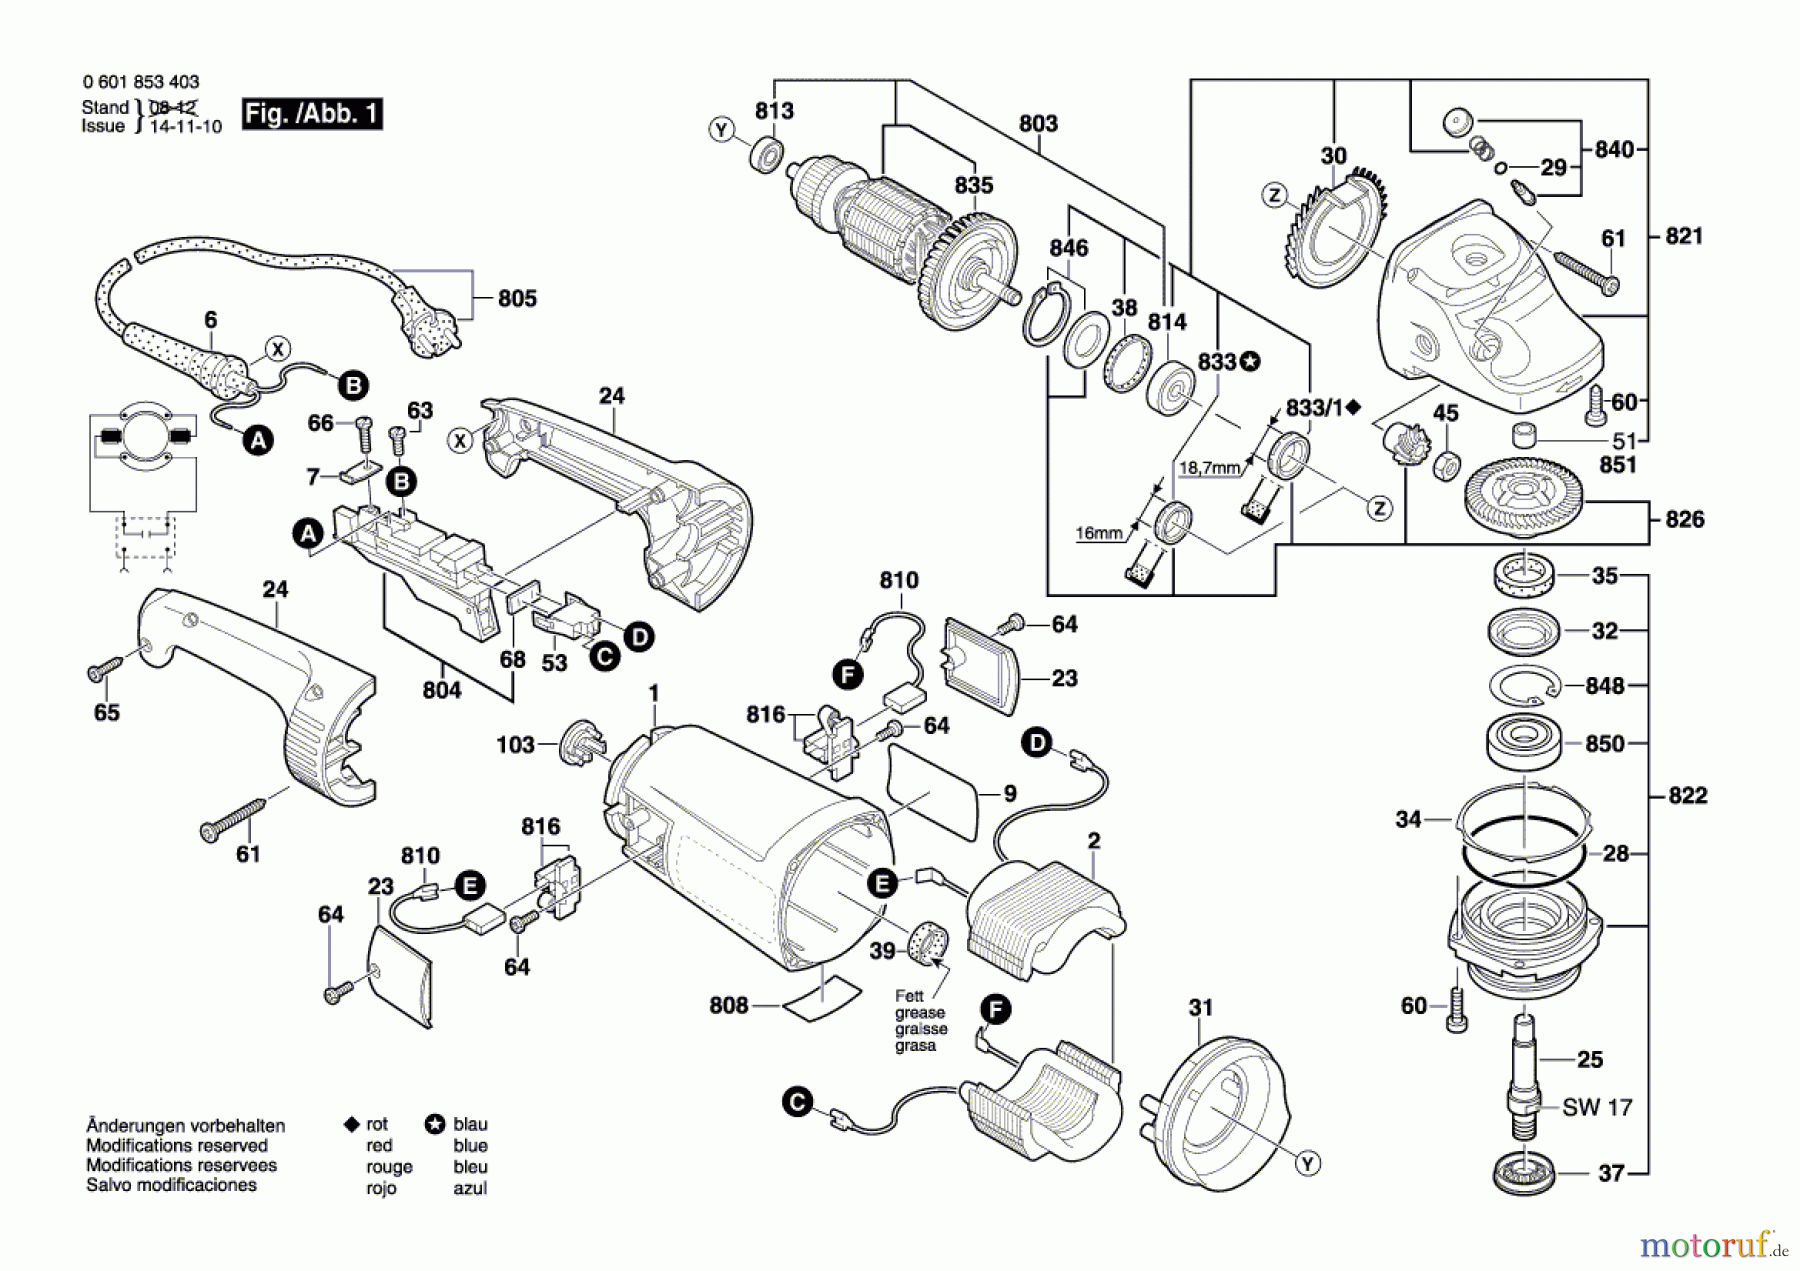  Bosch Werkzeug Winkelschleifer GWS 24-180 Seite 1